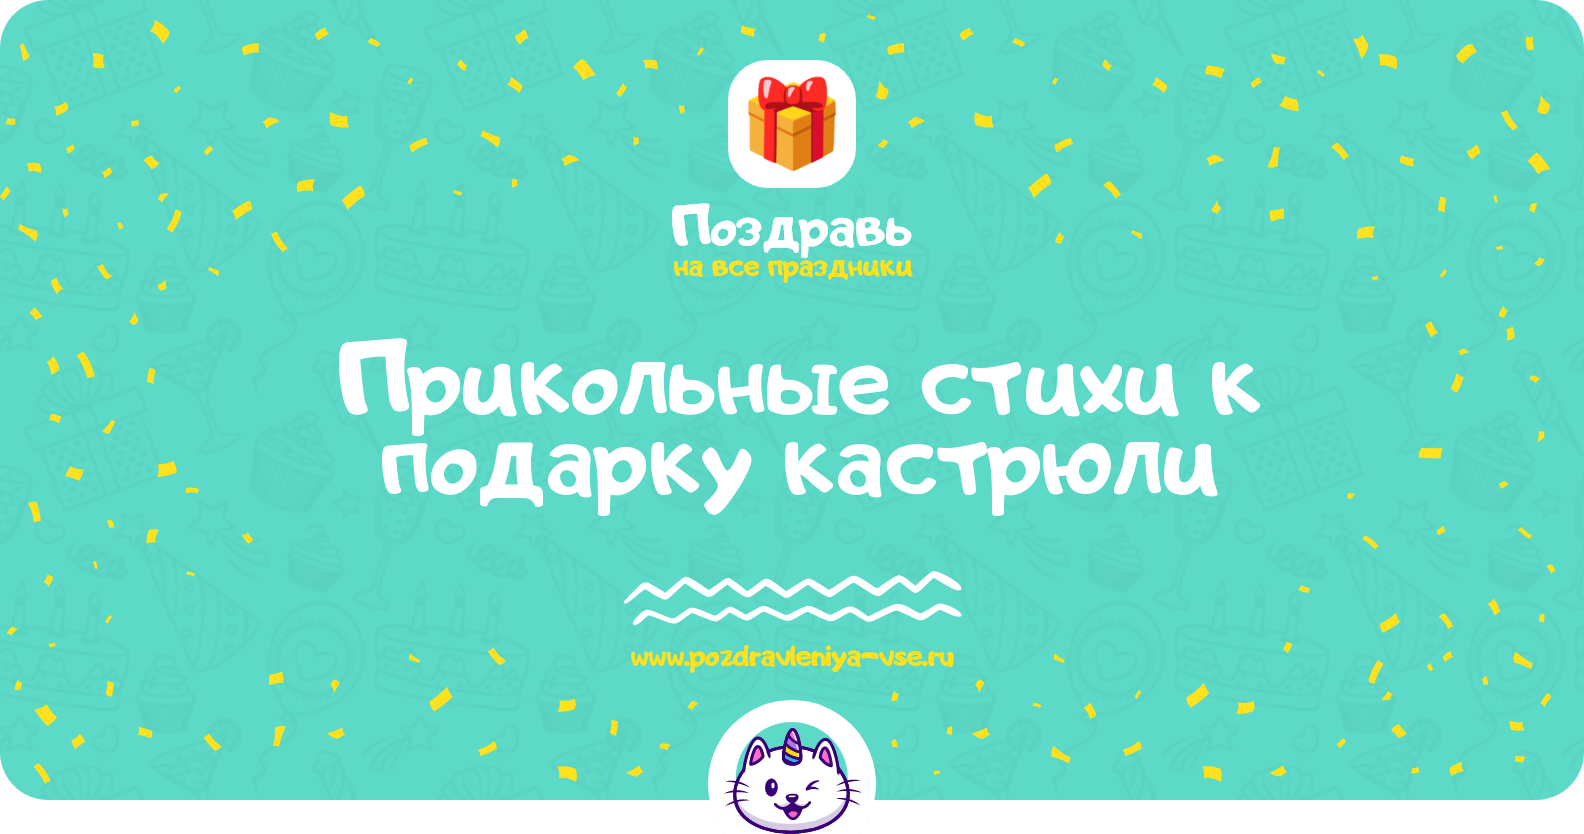 Стихи к подарку коллективные подарки — 5 поздравлений — paraskevat.ru